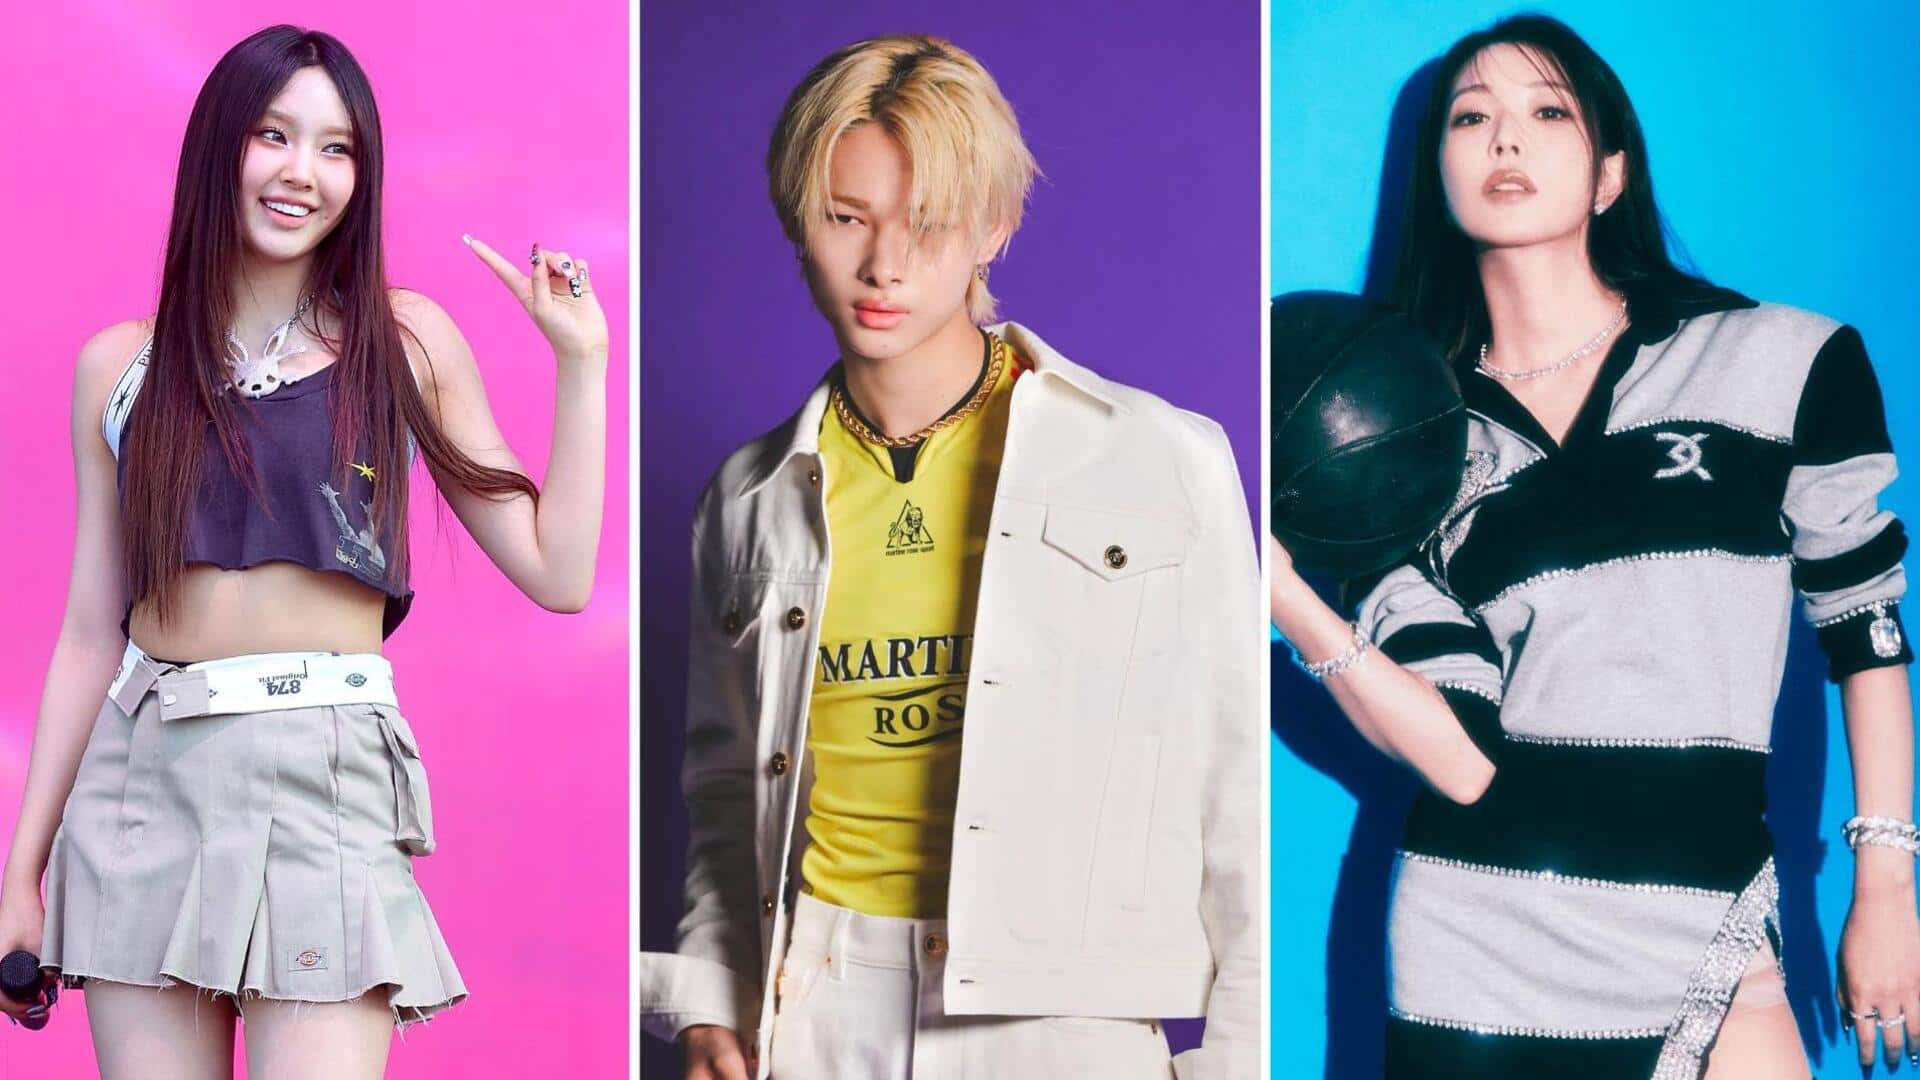 Explainer: Dark side of debuting minors in K-pop industry